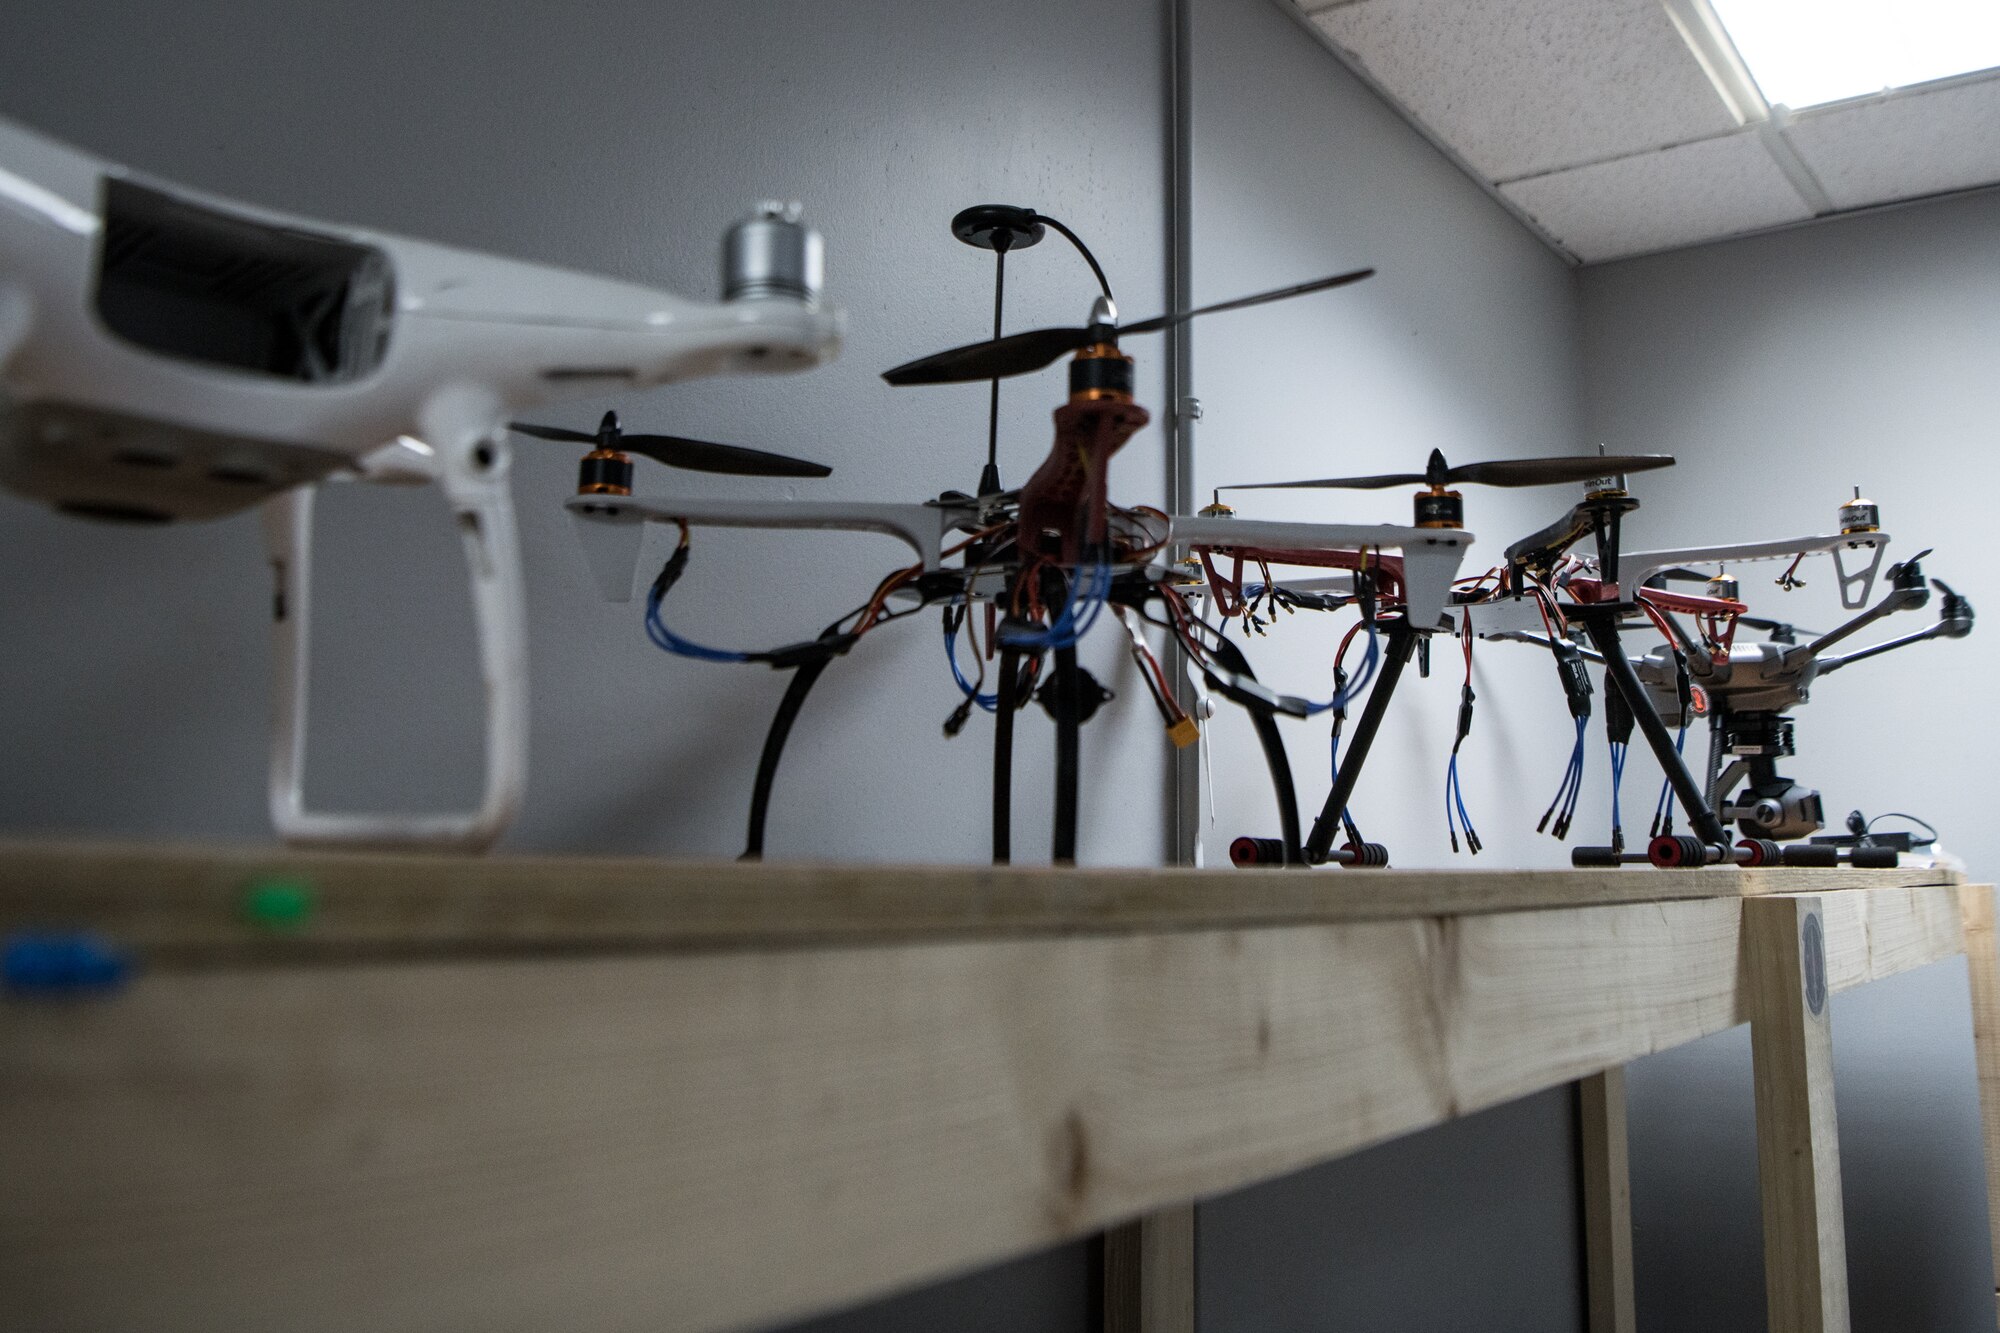 Drone models sit on shelf